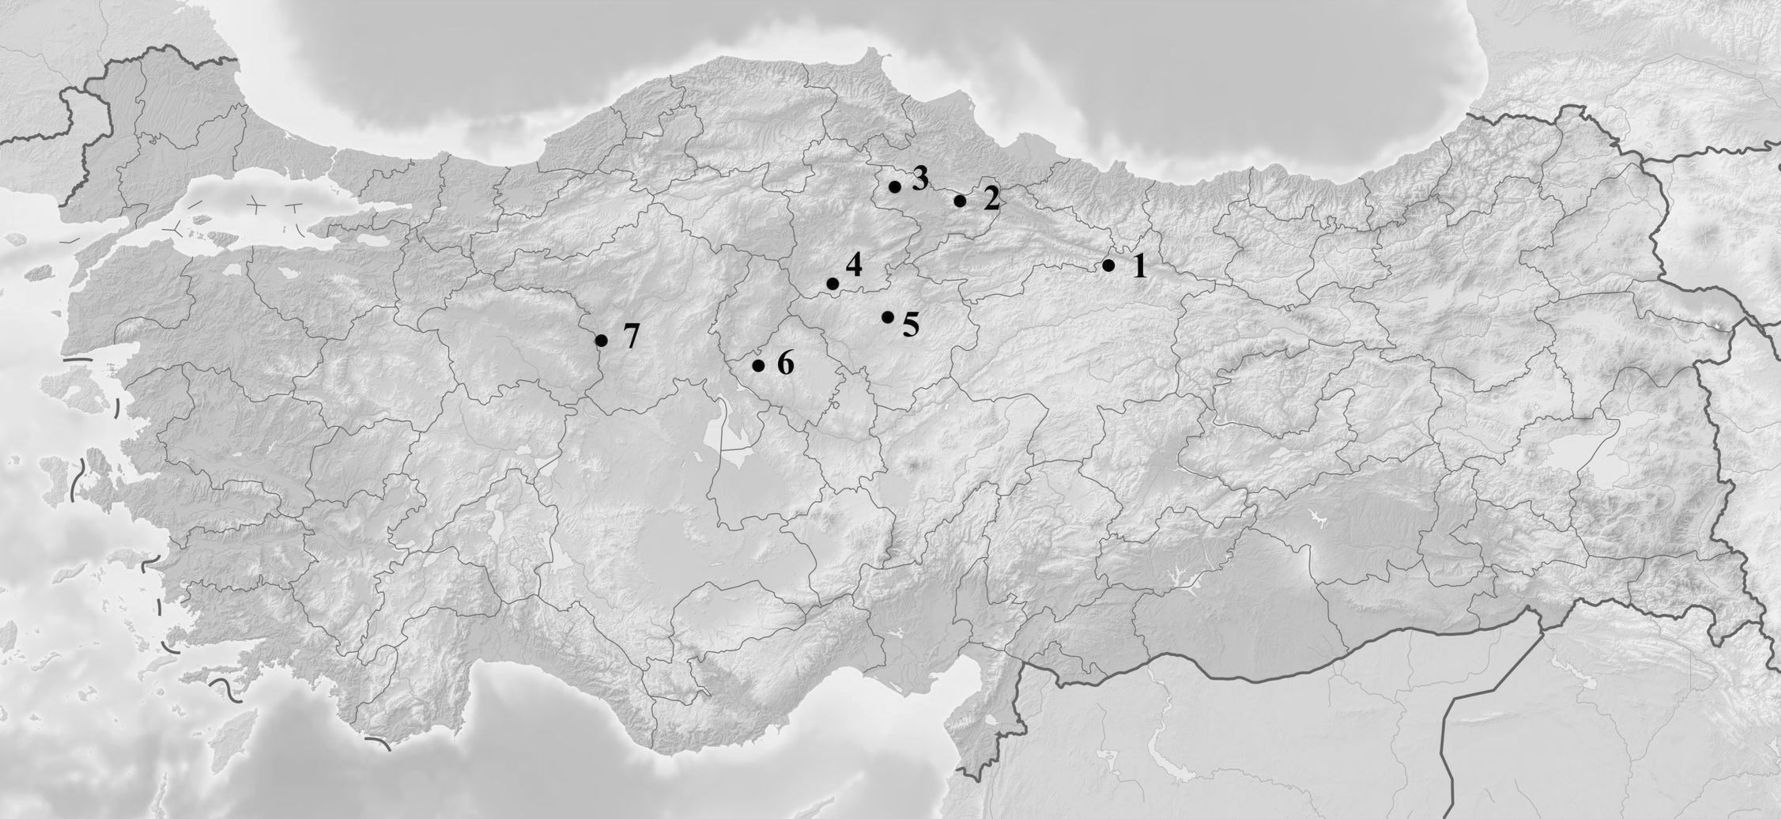 Рис. 1. Карта распространения находок кочевнического облика VII–VI вв. до н.э. в Цен-тральной Анатолии: 1 – ил Сивас; 2 – Амасья; 3 – Имирлер; 4 – Богазкёй; 5 – Керкенес Даг; 6 – Каман-Калехёюк; 7 – Гордион. Fig. 1. Distribution map of nomadic type artifacts of the 7th–6th centuries BC in Central Anatolia: 1 – Sivas İl; 2 – Amasya; 3 – Imirler; 4 – Boğazköy; 5 – Kerkenez Dağ; 6 – Kaman-Kalehöyük; 7 – Gordion. 